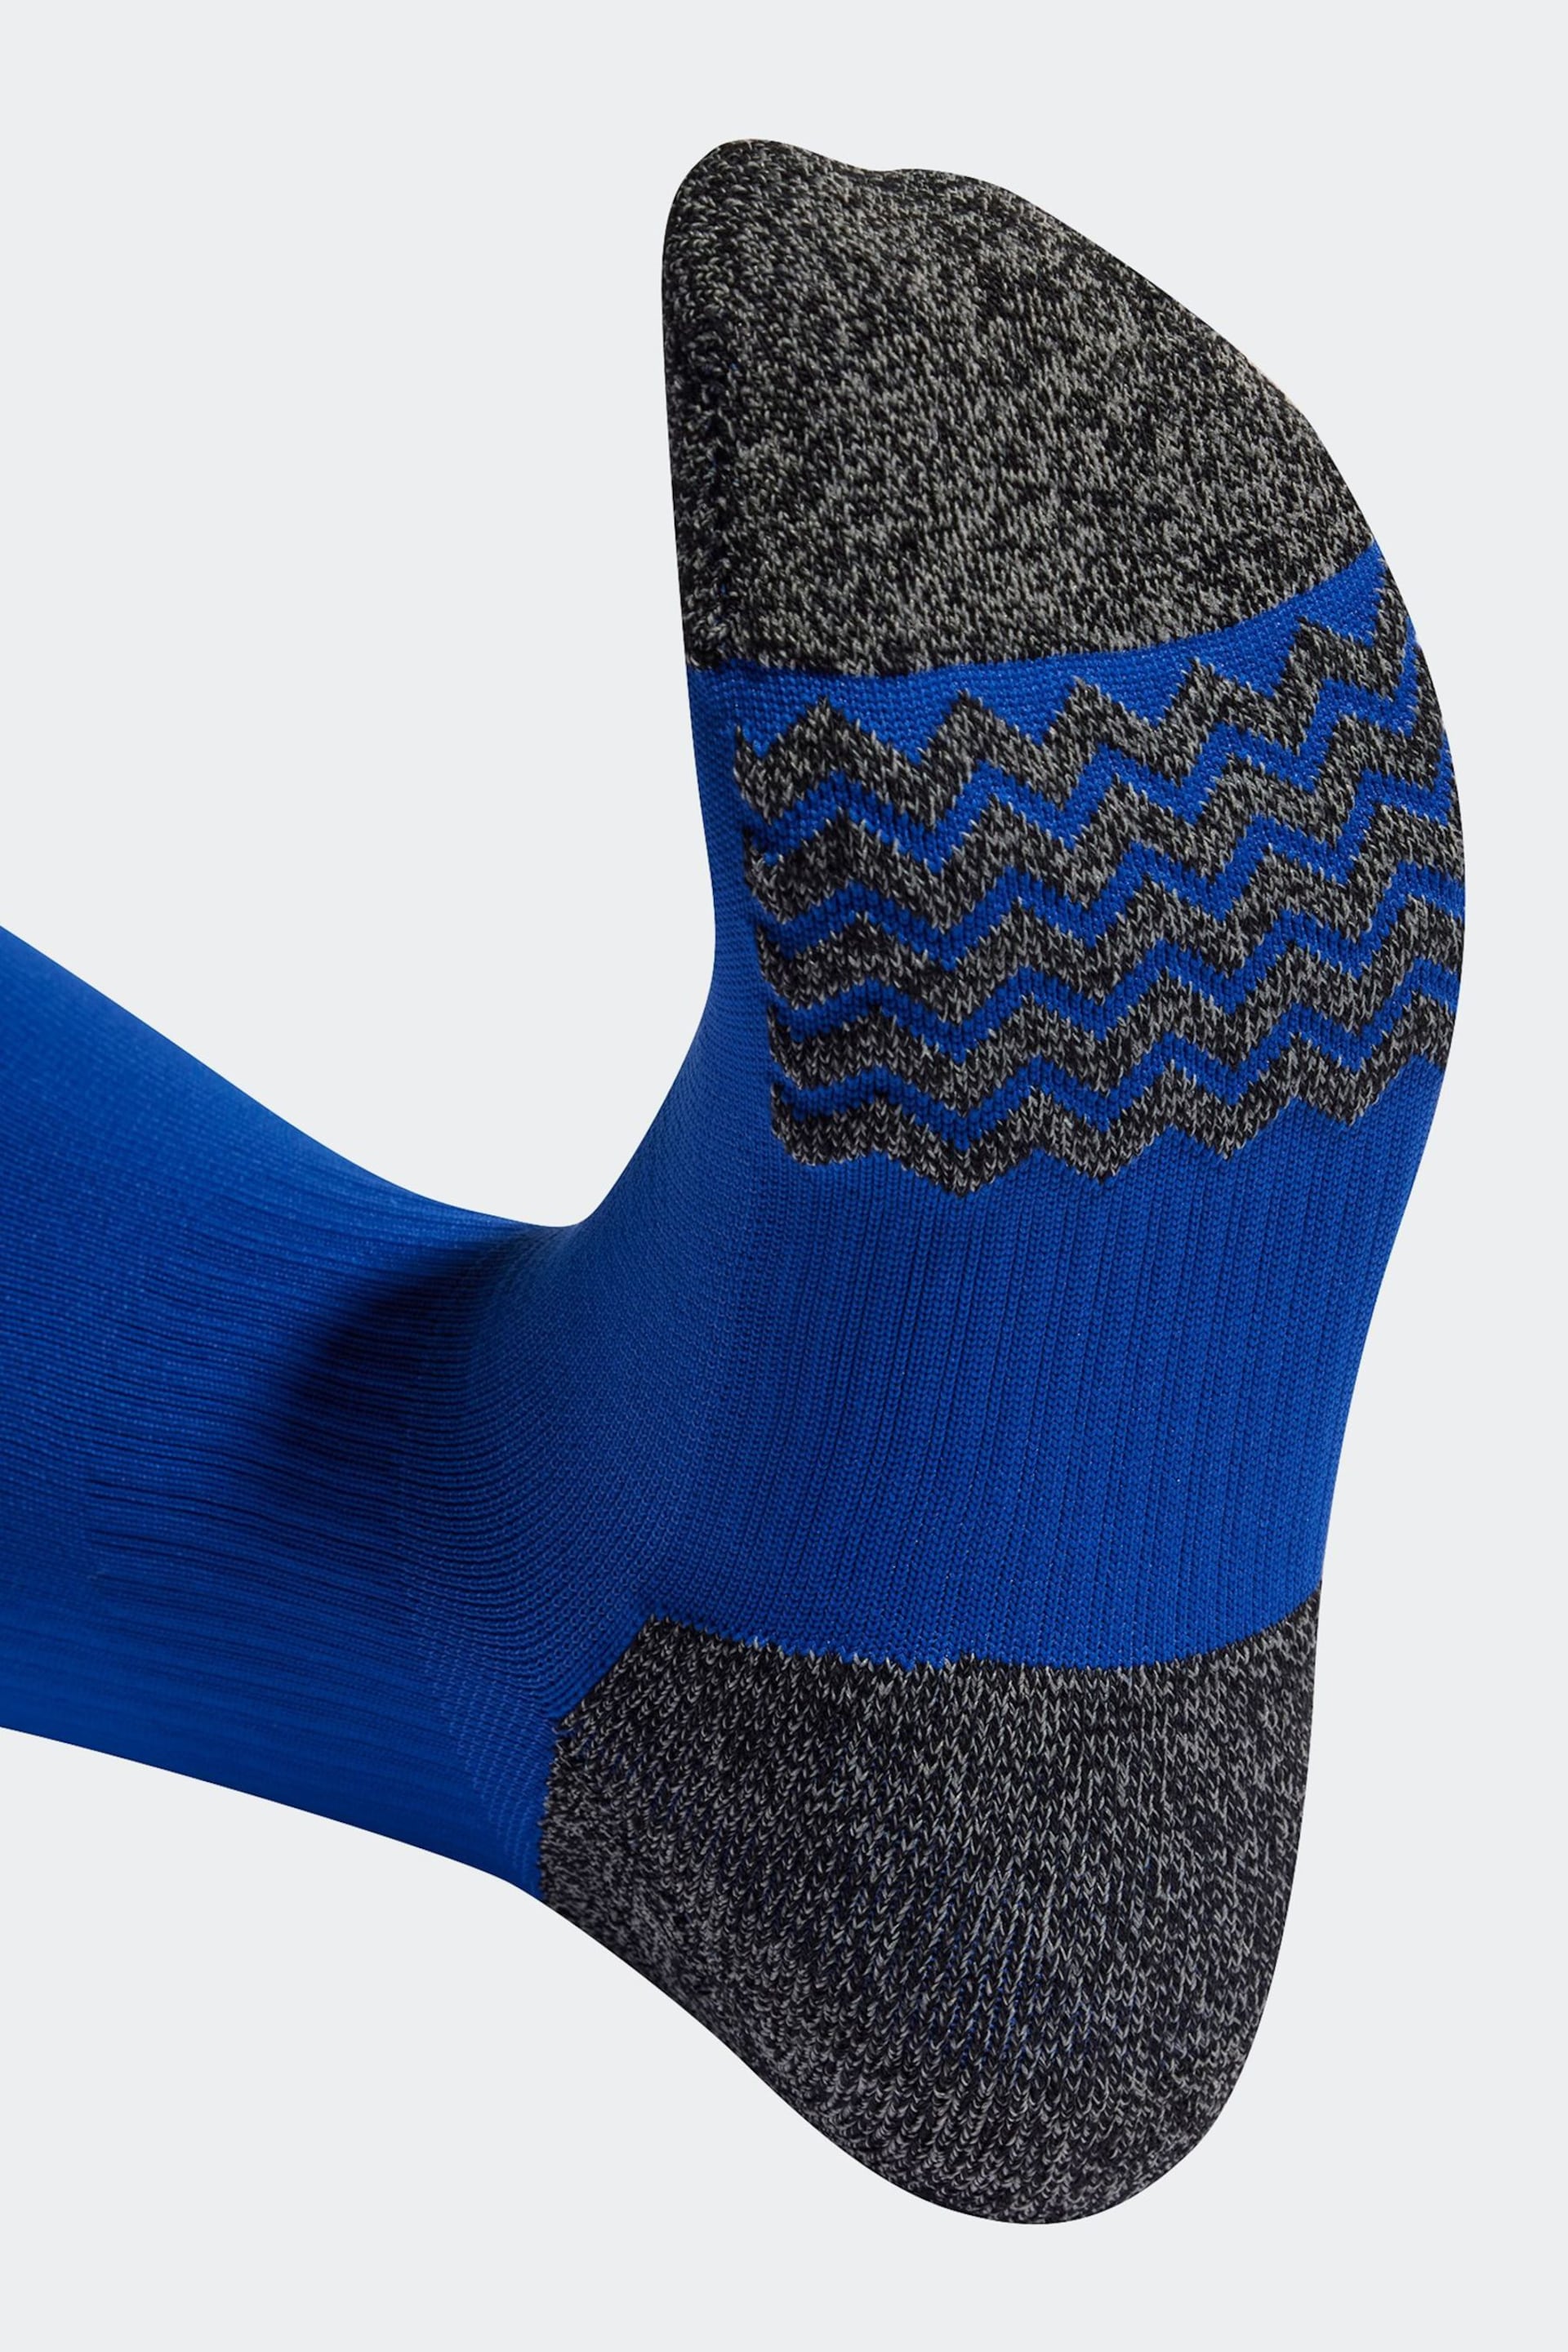 adidas Blue Performance Adi 23 Socks - Image 2 of 3